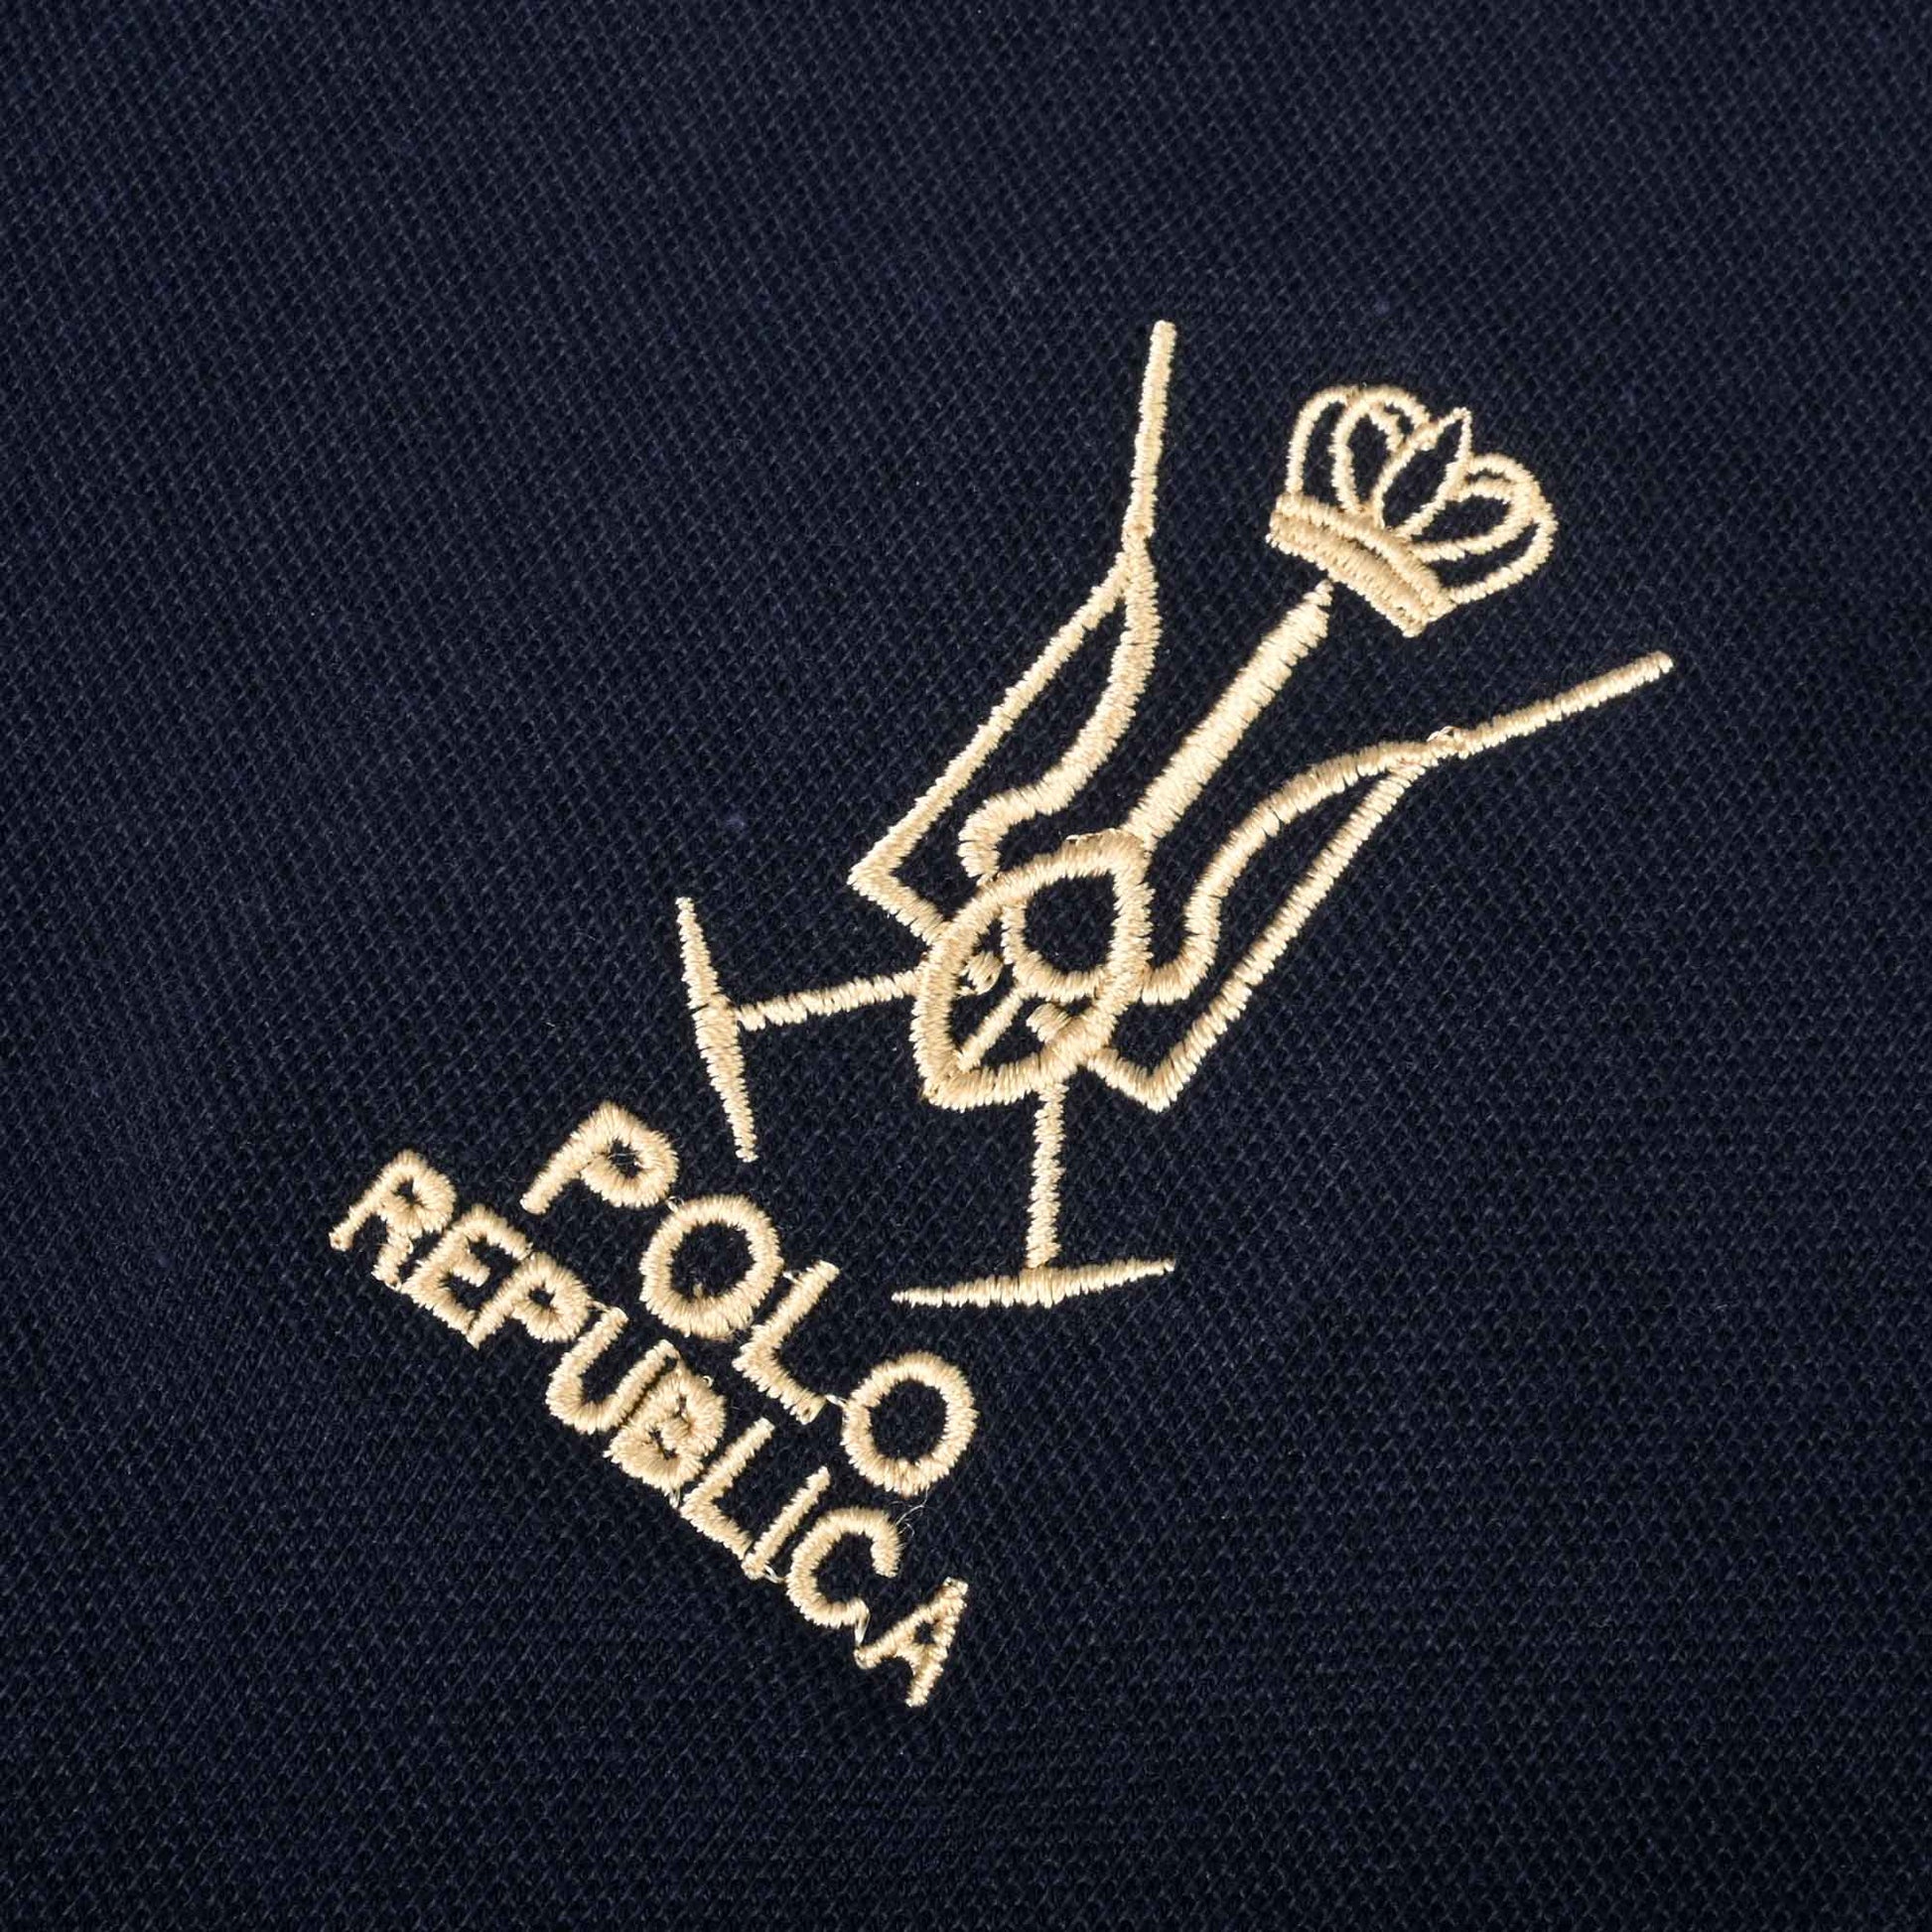 Polo Republica Men's Two Horse Rider & PR Crown Embroidered Short Sleeve Polo Shirt Men's Polo Shirt Polo Republica 